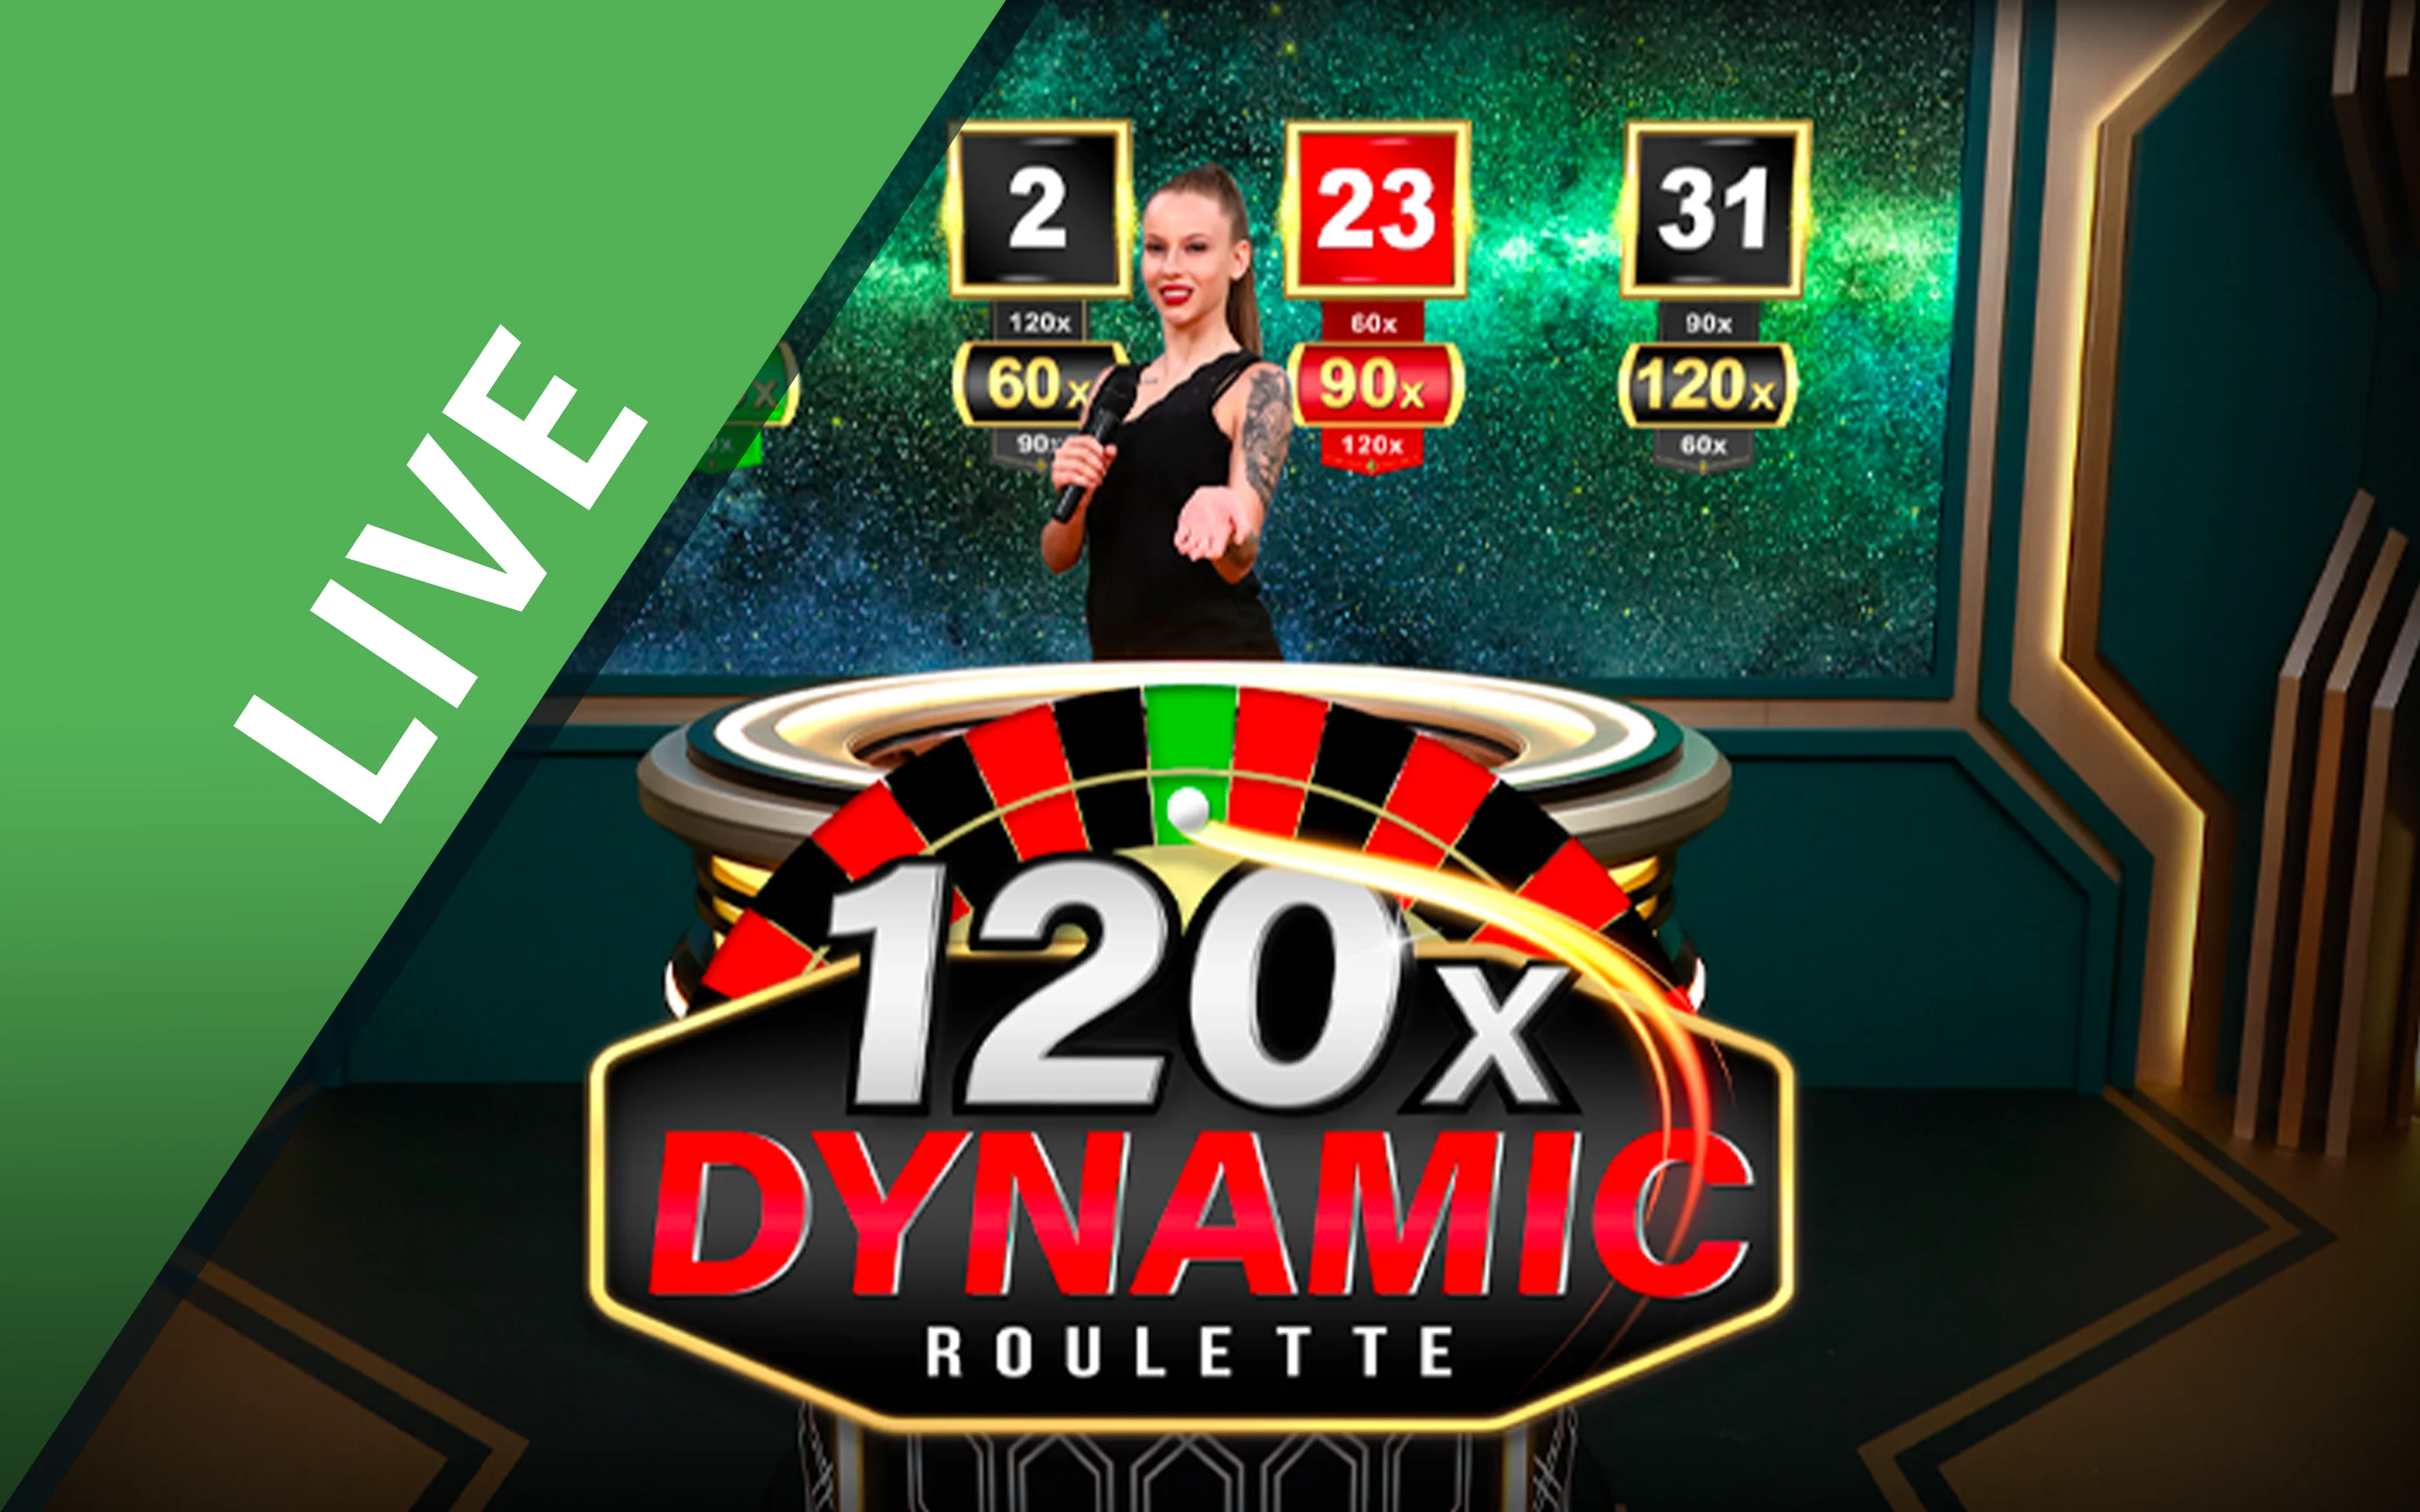 Gioca a Dynamic Roulette 120x sul casino online Starcasino.be